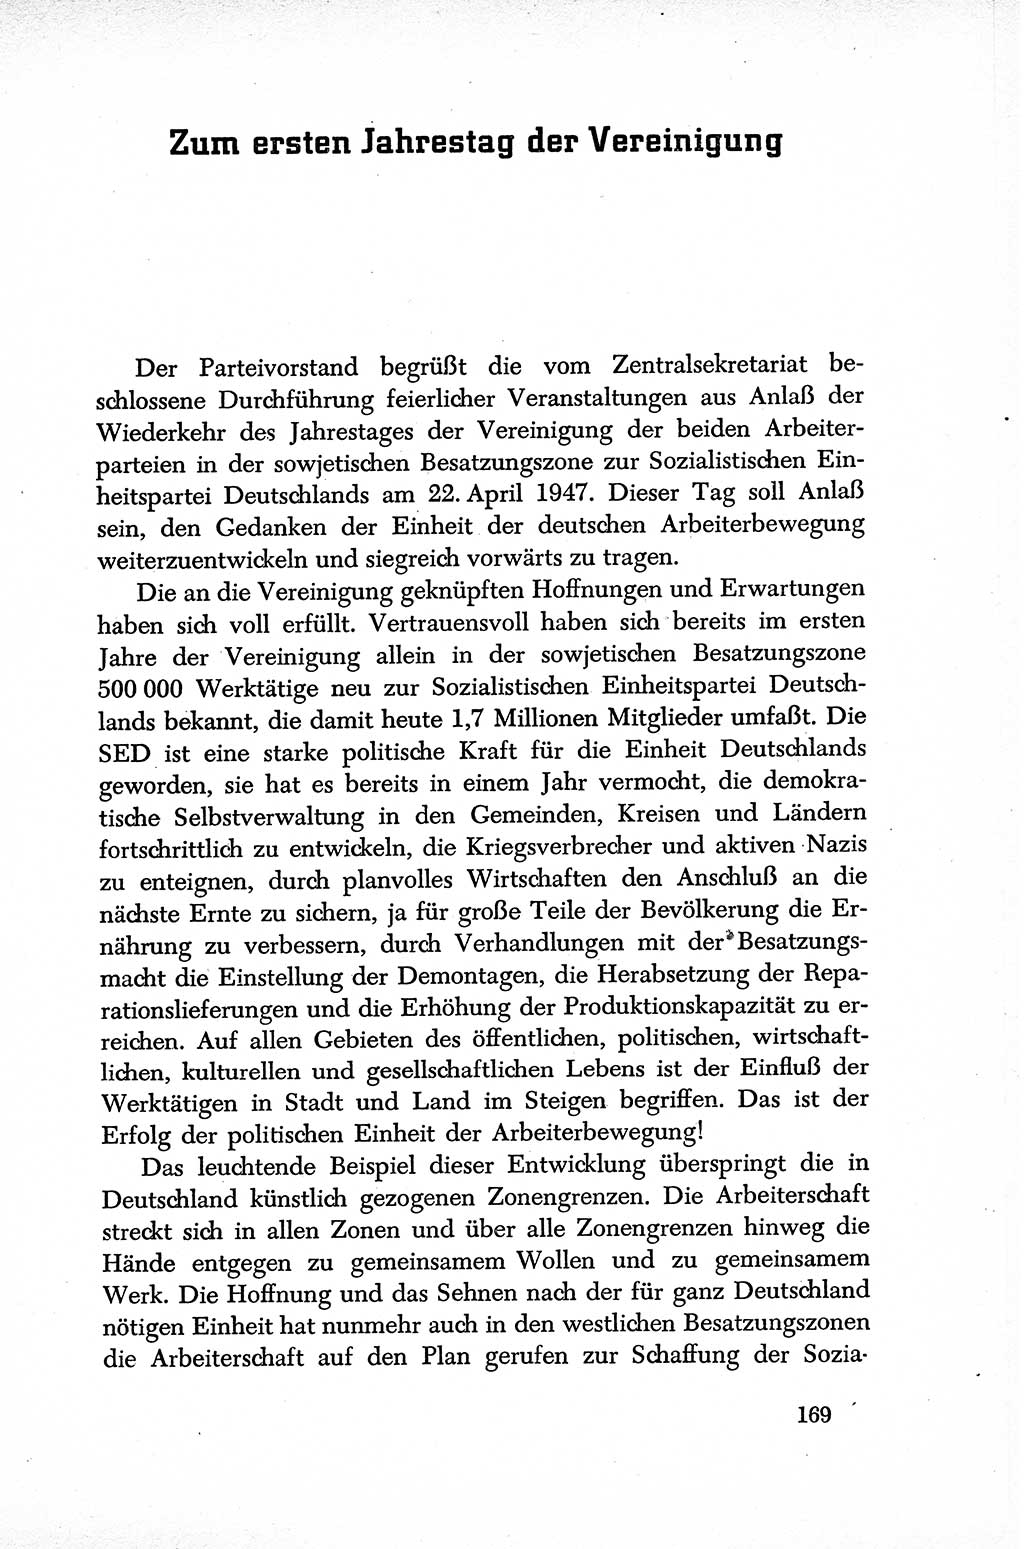 Dokumente der Sozialistischen Einheitspartei Deutschlands (SED) [Sowjetische Besatzungszone (SBZ) Deutschlands] 1946-1948, Seite 169 (Dok. SED SBZ Dtl. 1946-1948, S. 169)